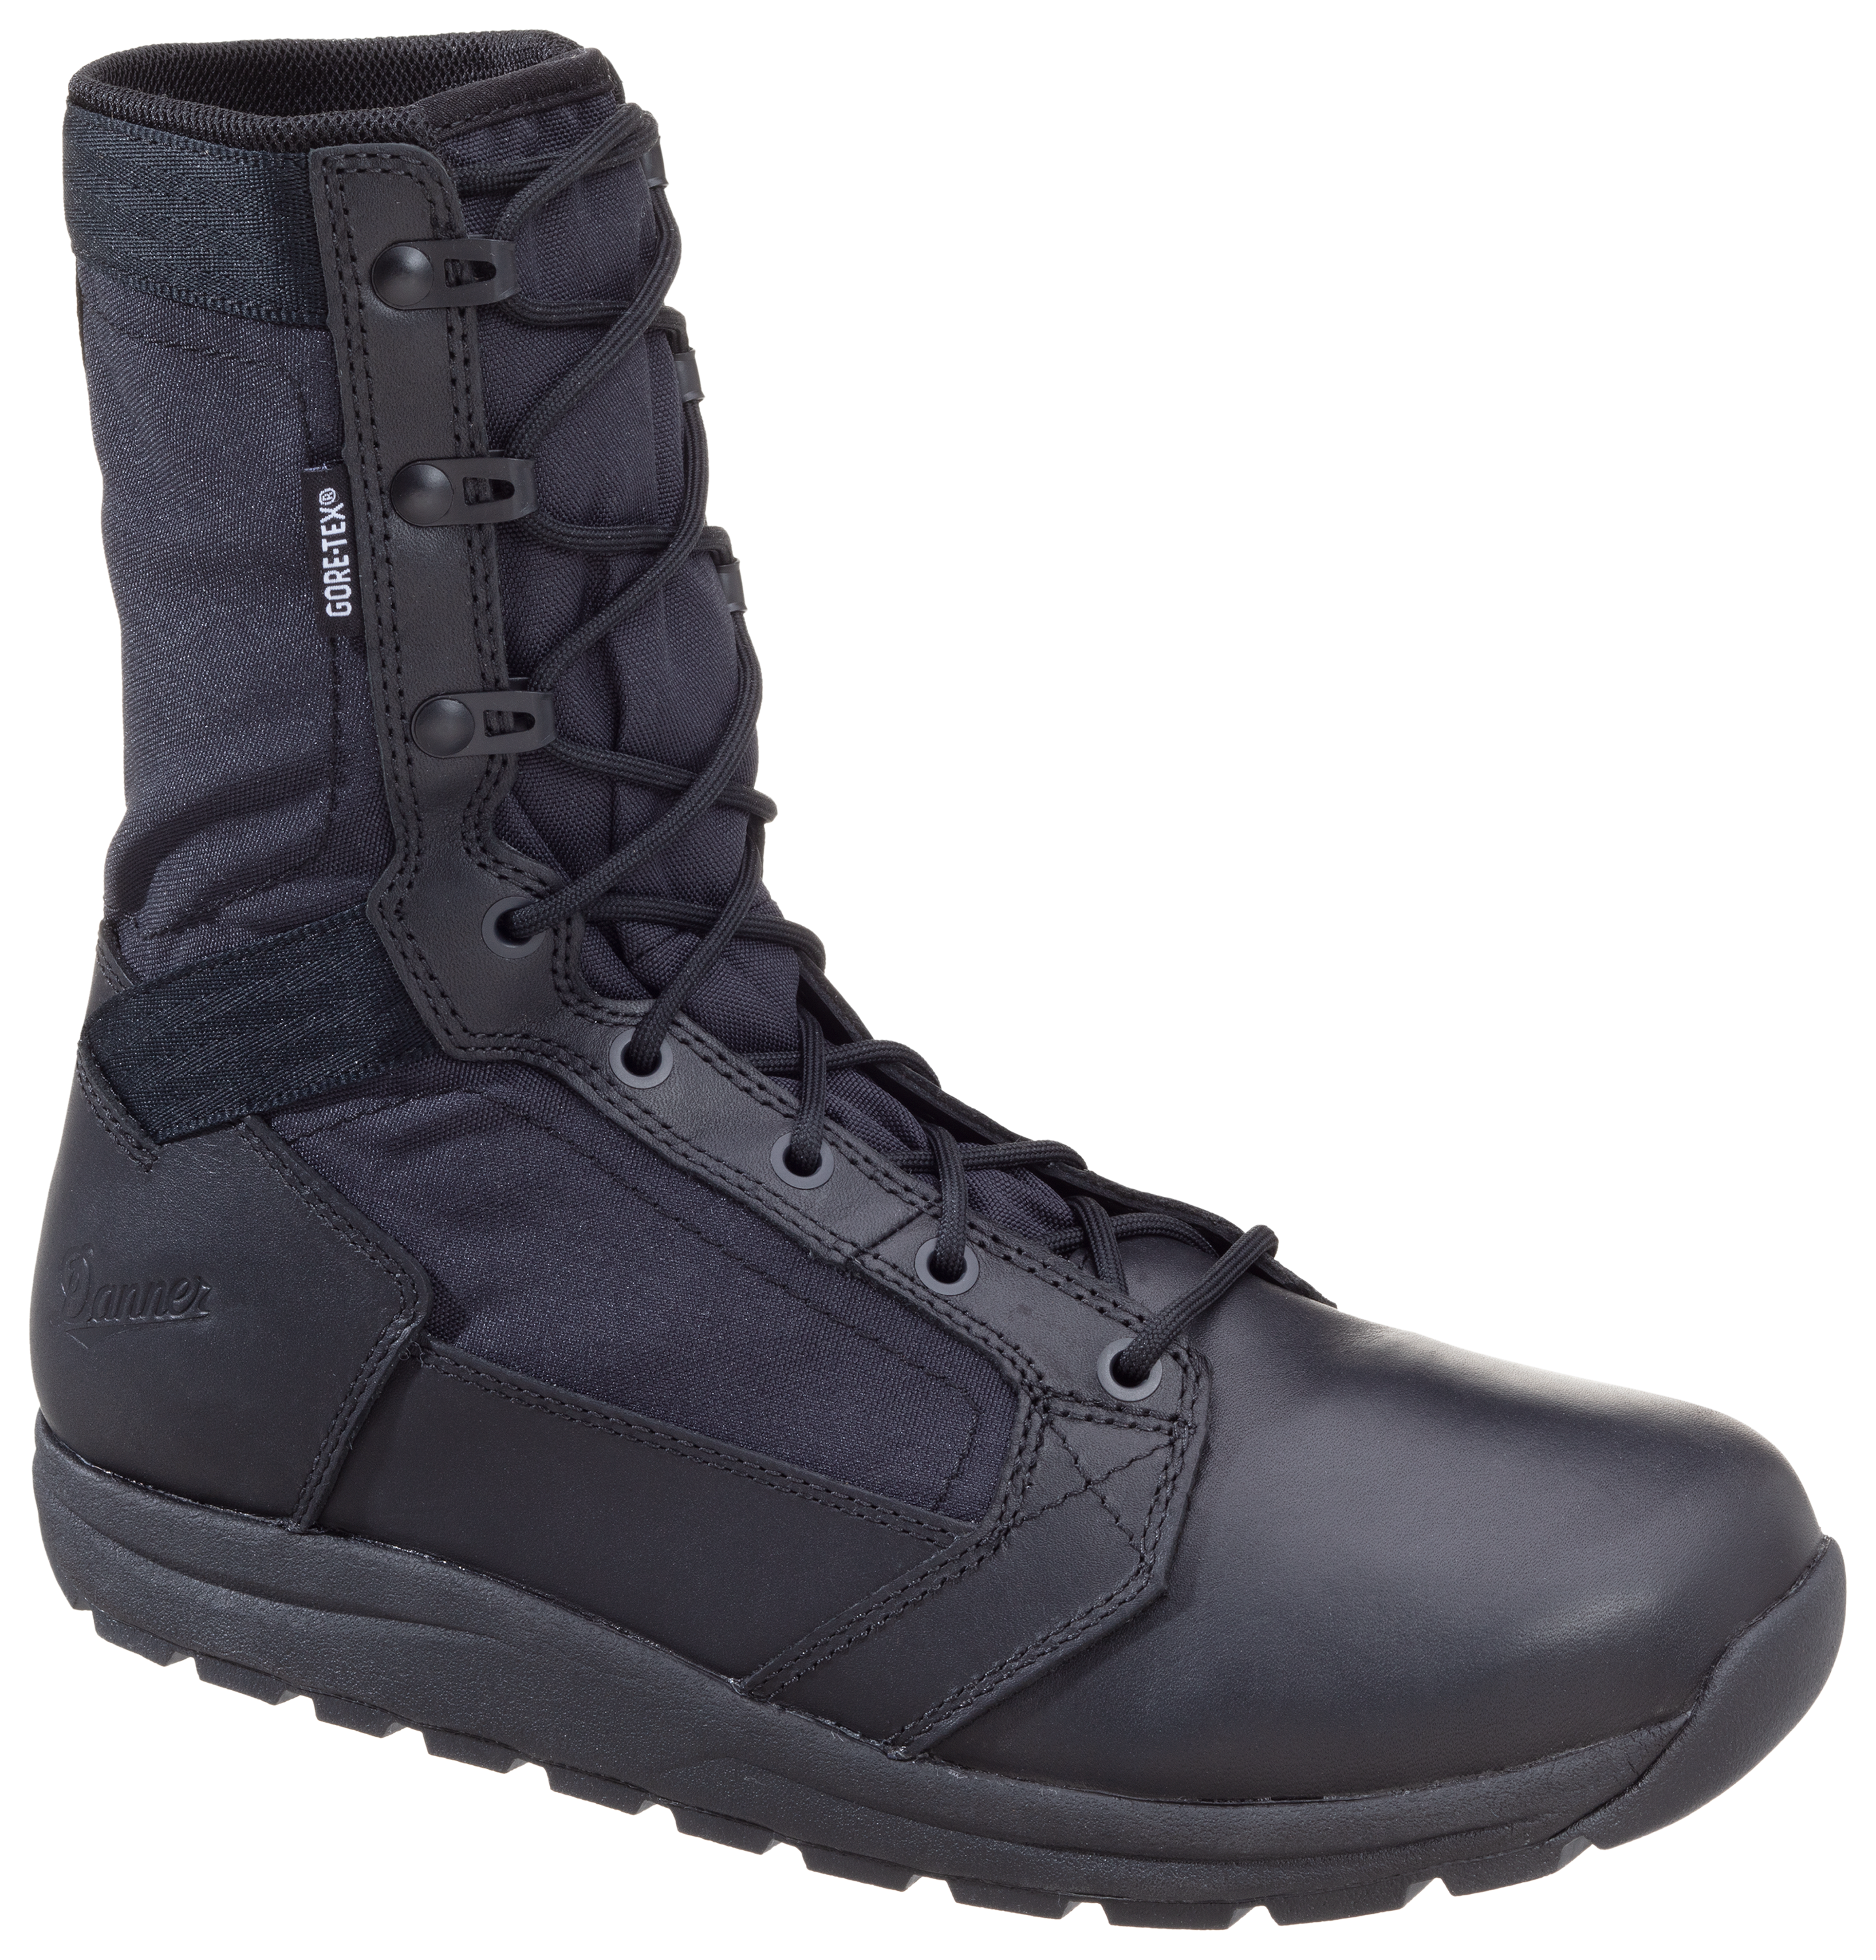 Danner Tachyon GORE-TEX Tactical Duty Boots for Men - Black - 14M